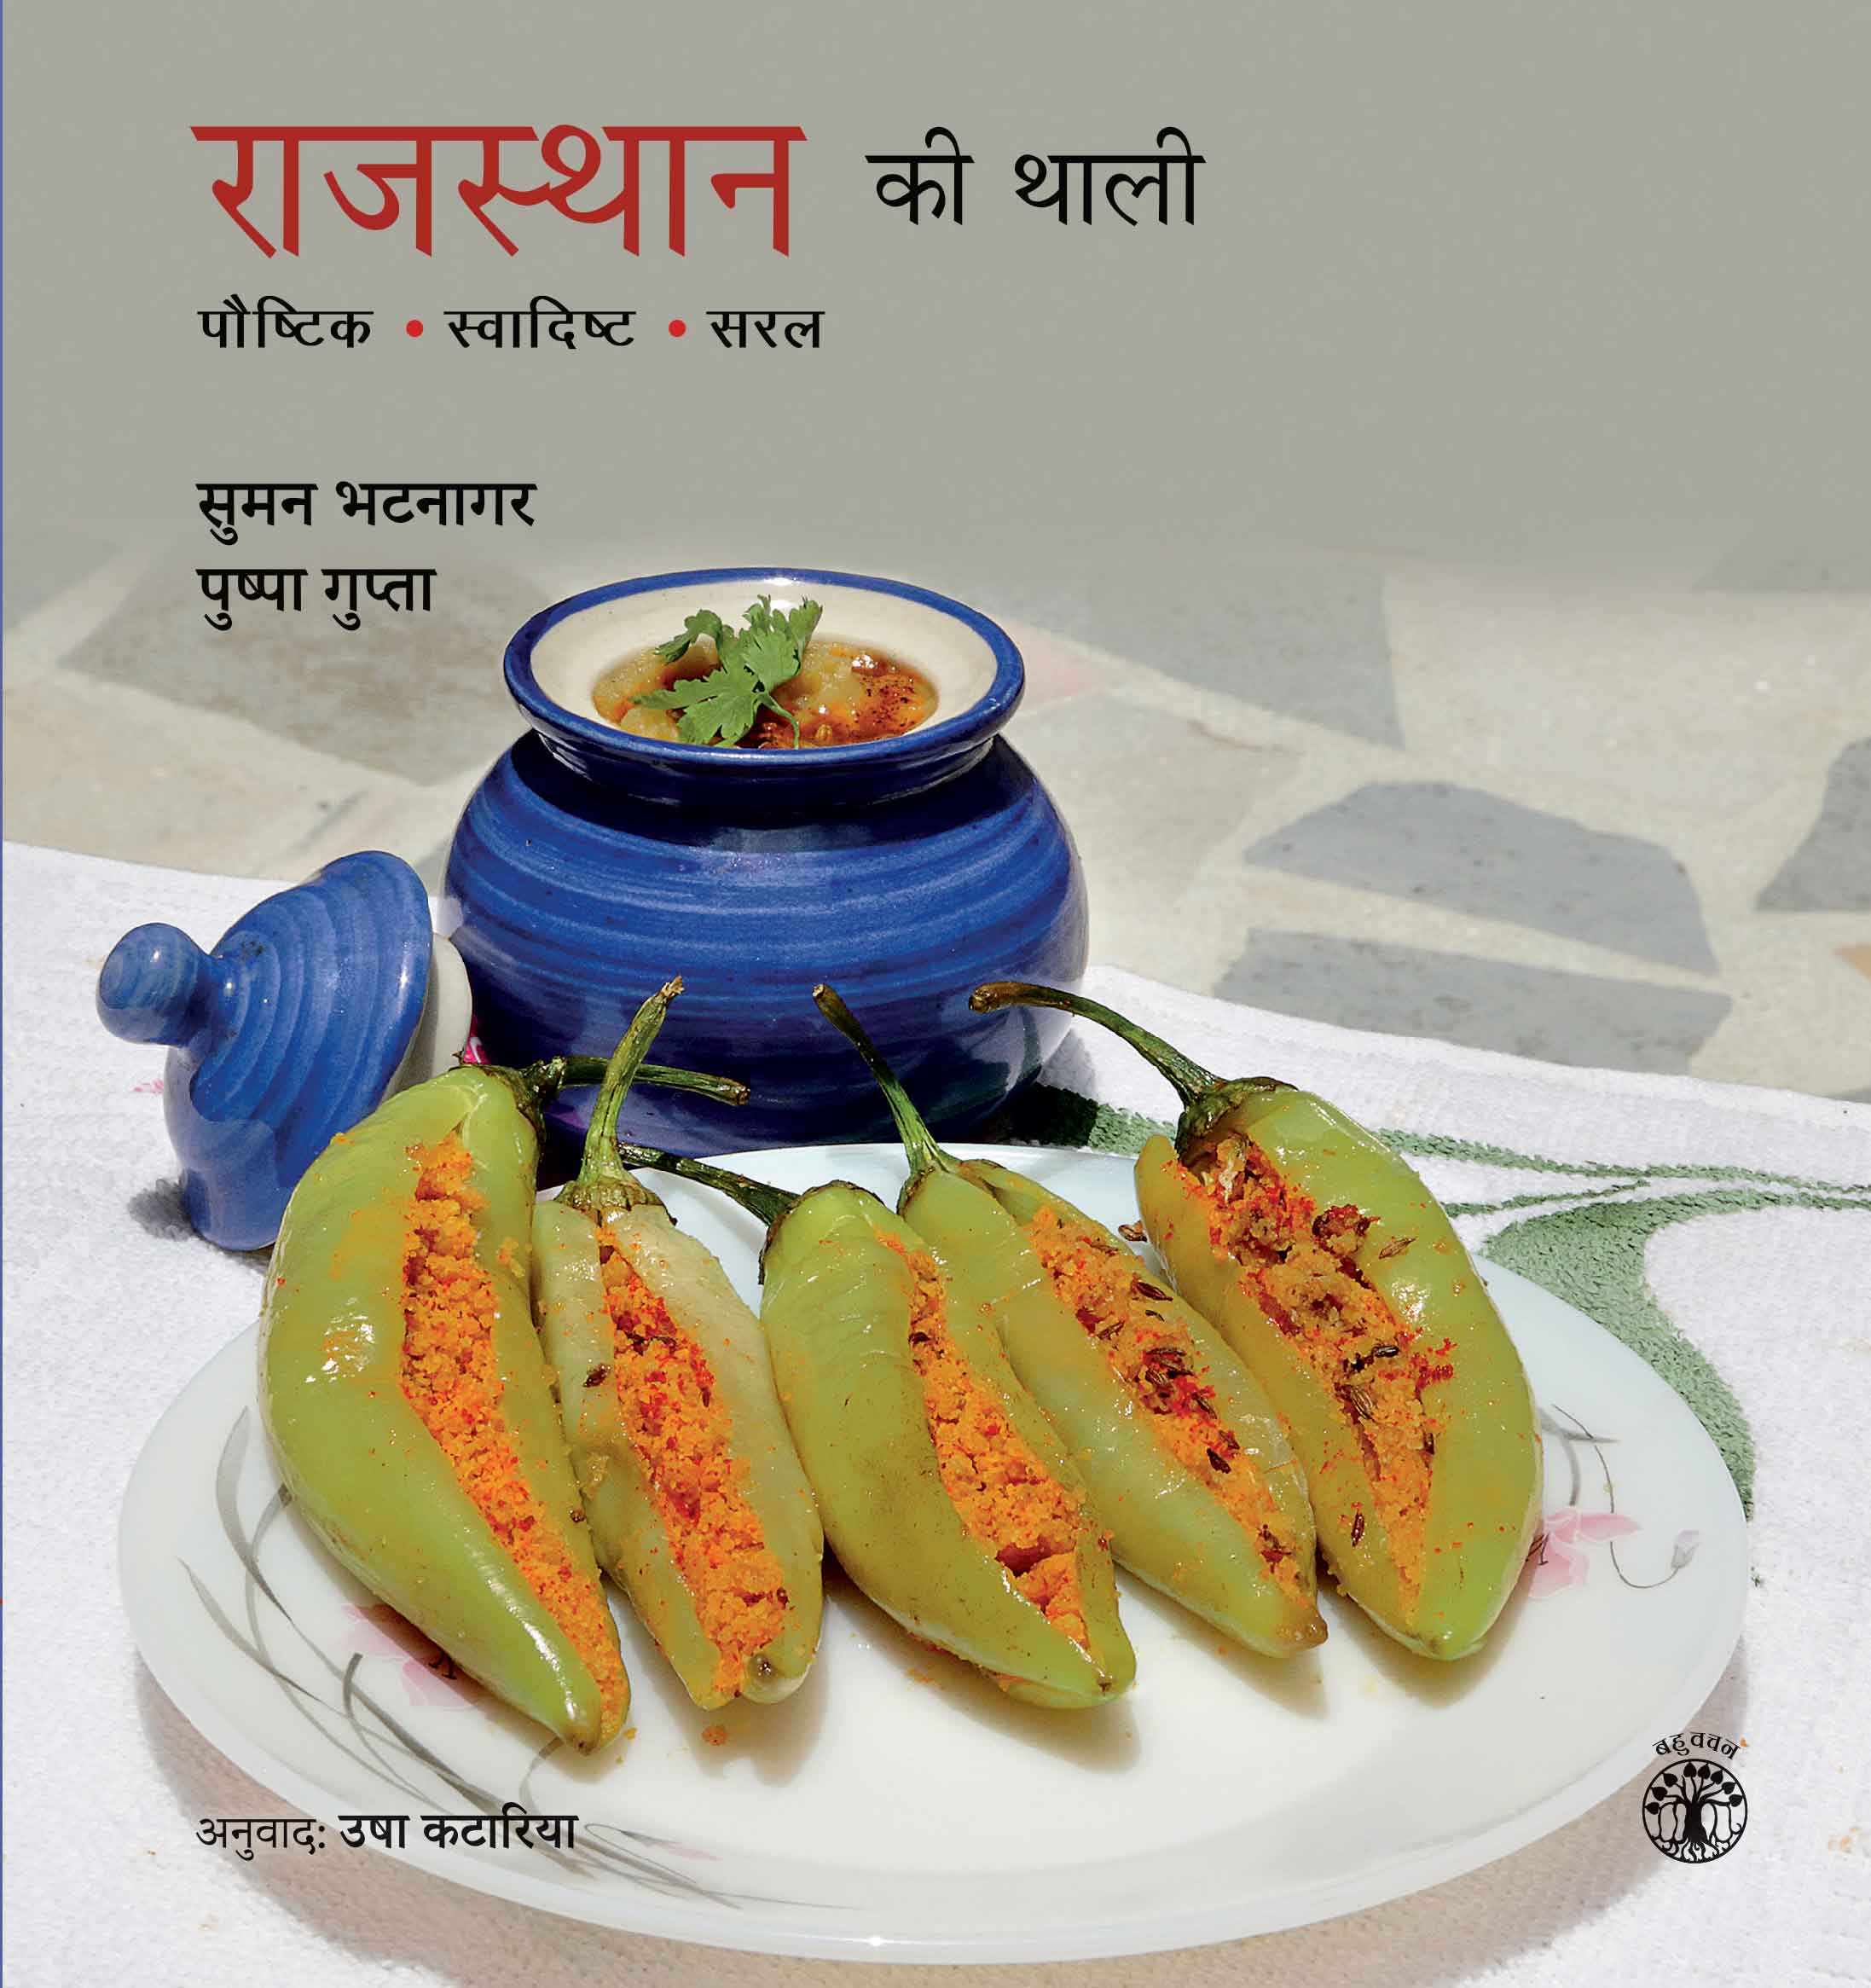 राजस्थान की थाली : पौष्टिक, स्वादिष्ट, सरल बुक्स